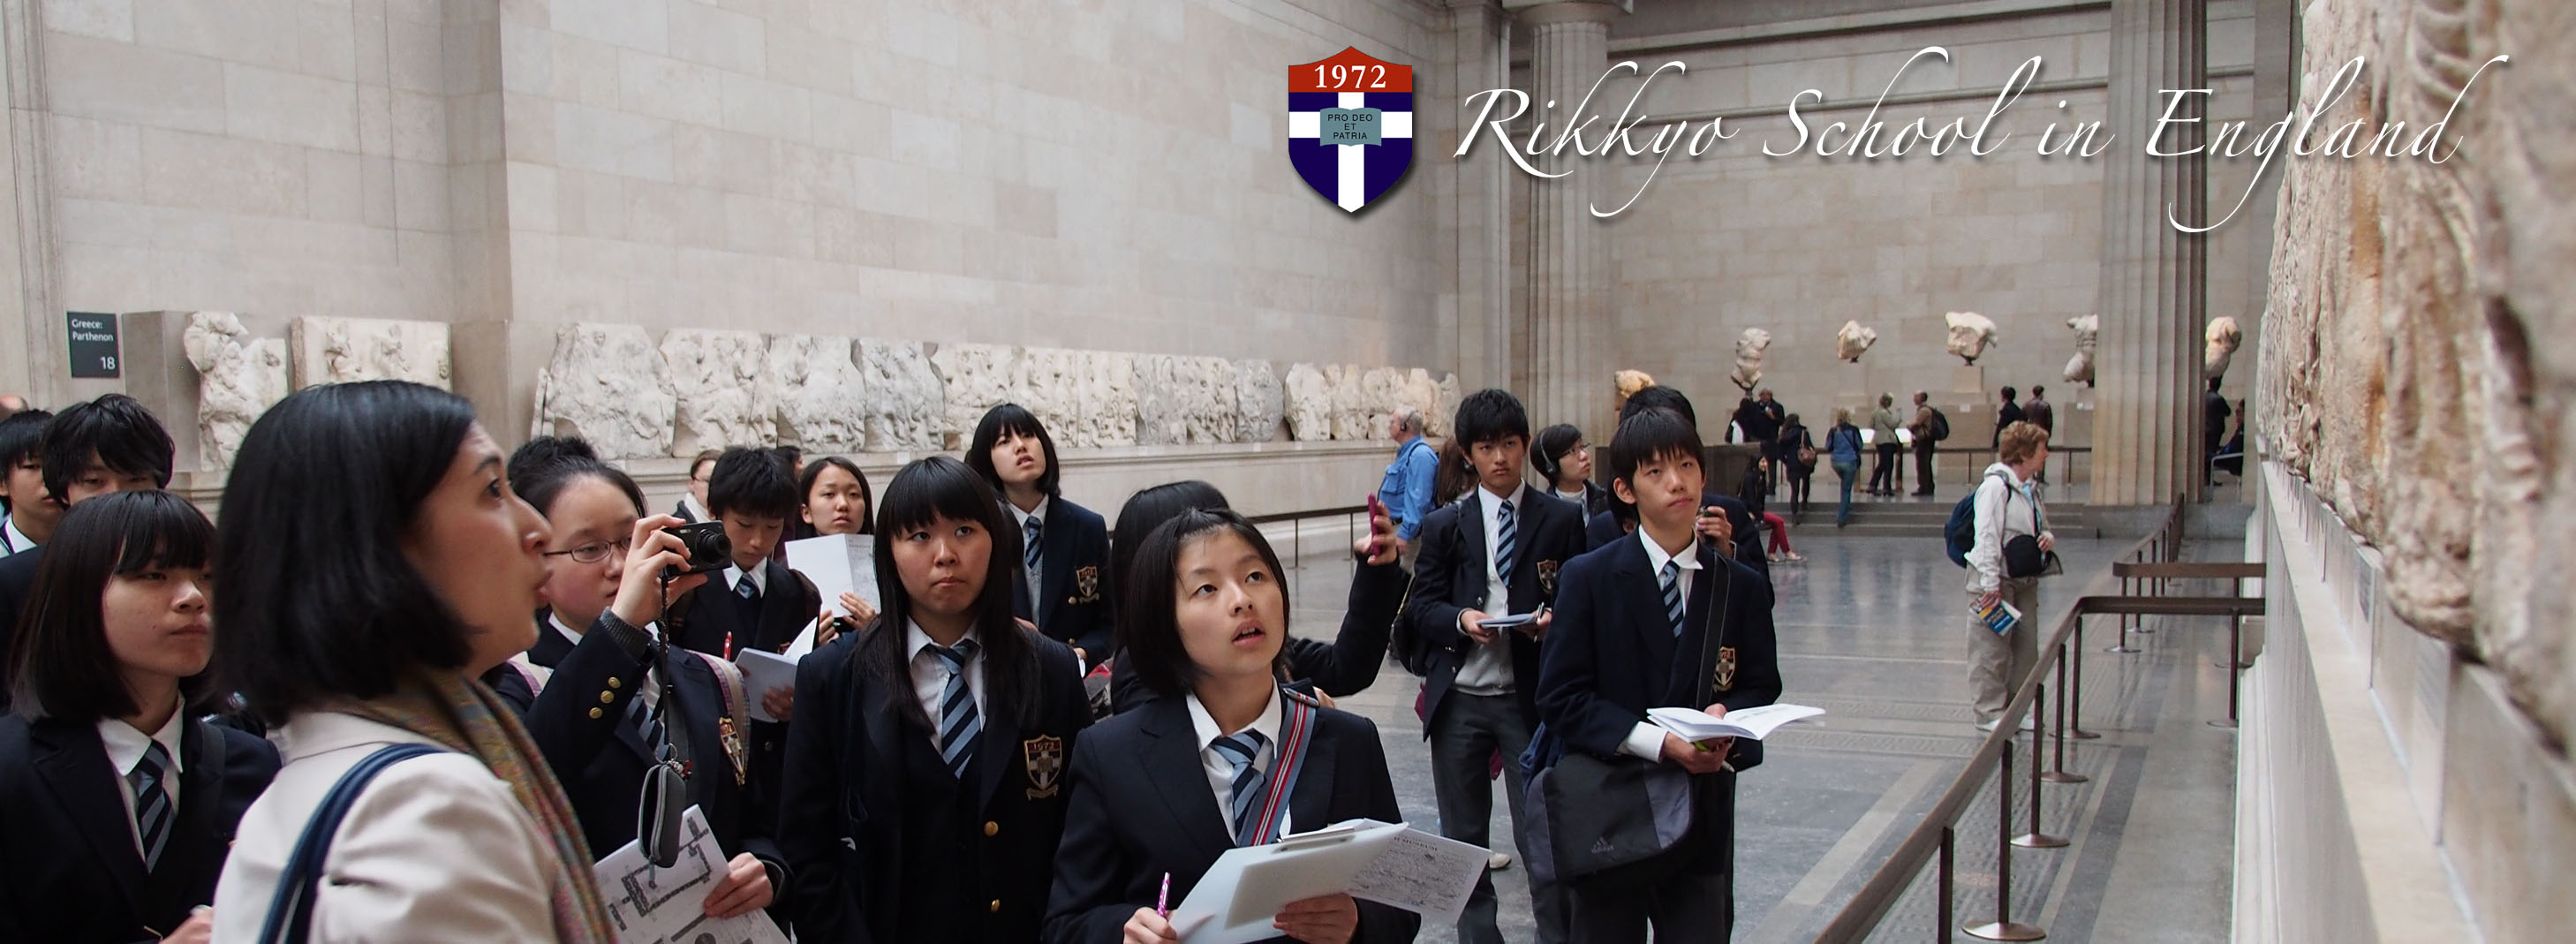 rikkyo school in england